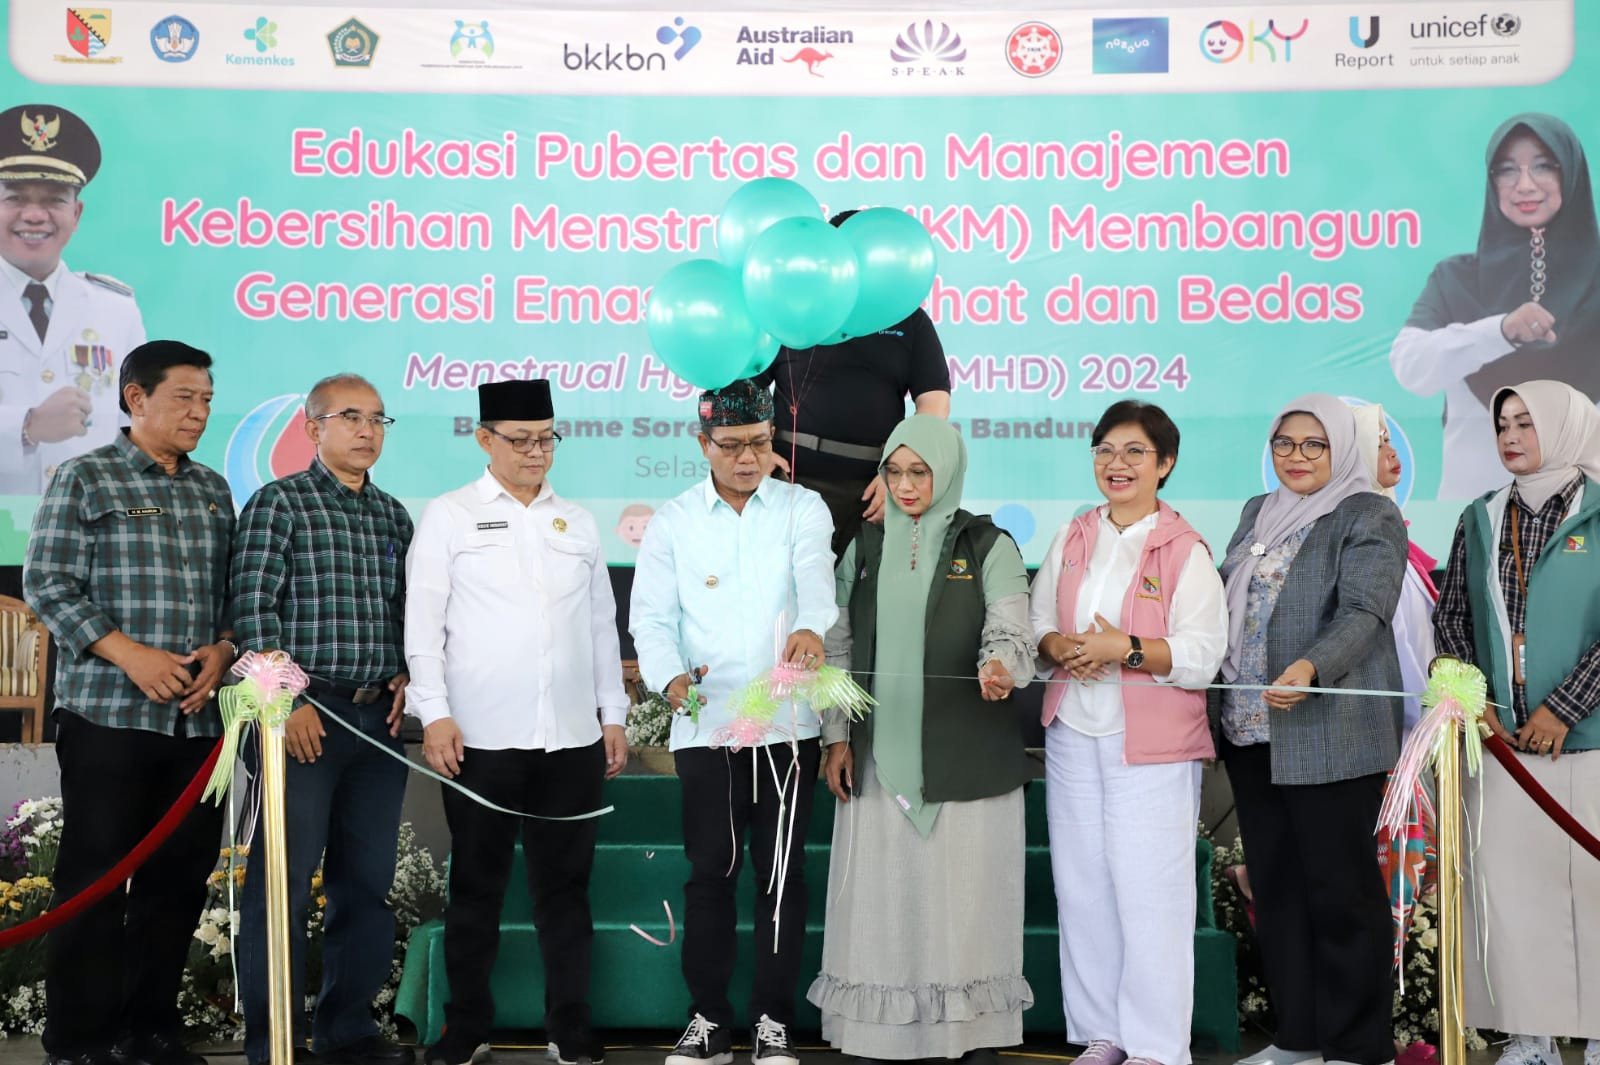 Kabupaten Bandung Dipilih Unicef Indonesia jadi Percontohan Edukasi Kebersihan Menstruasi